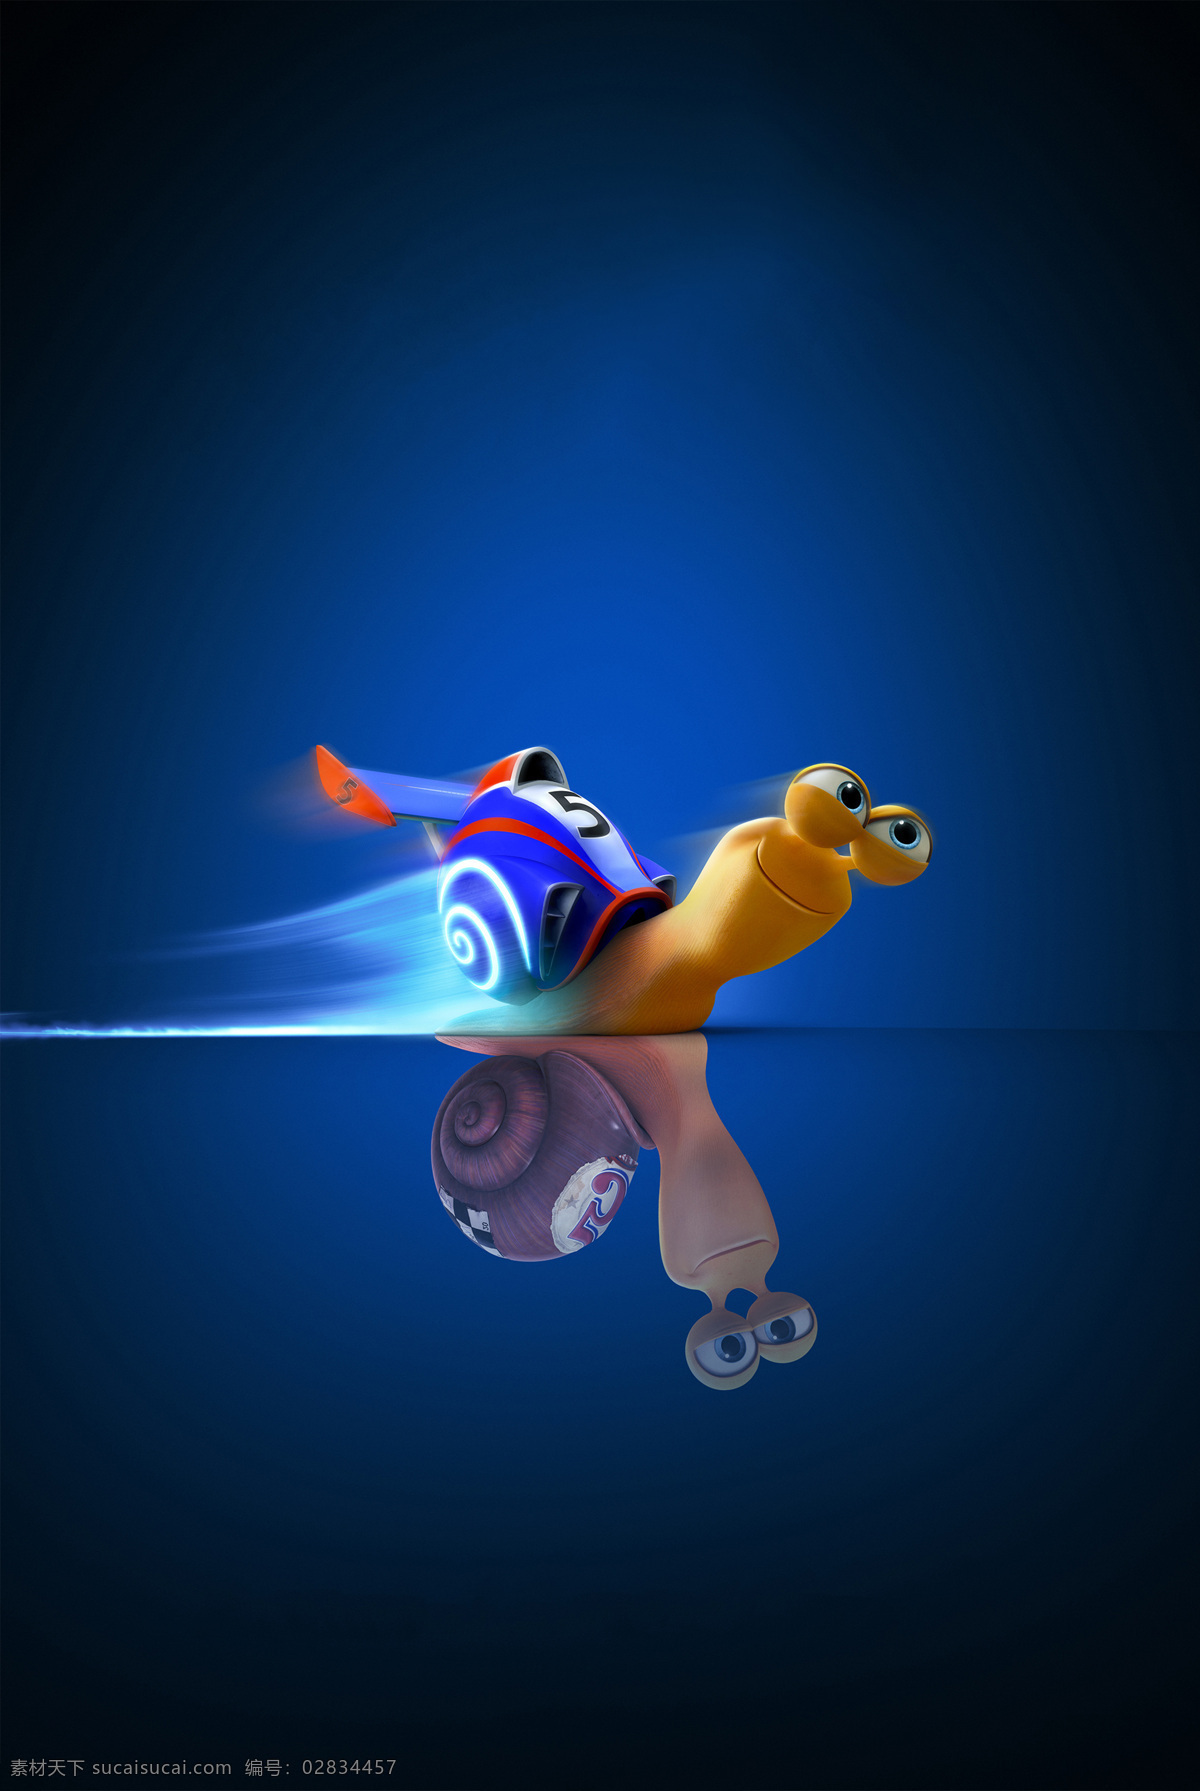 极速蜗牛 涡轮方程式 菜园 蜗牛 蜗牛赛车 速度传奇 特伯 动画 梦工厂 dreamworks 动漫动画 动漫人物